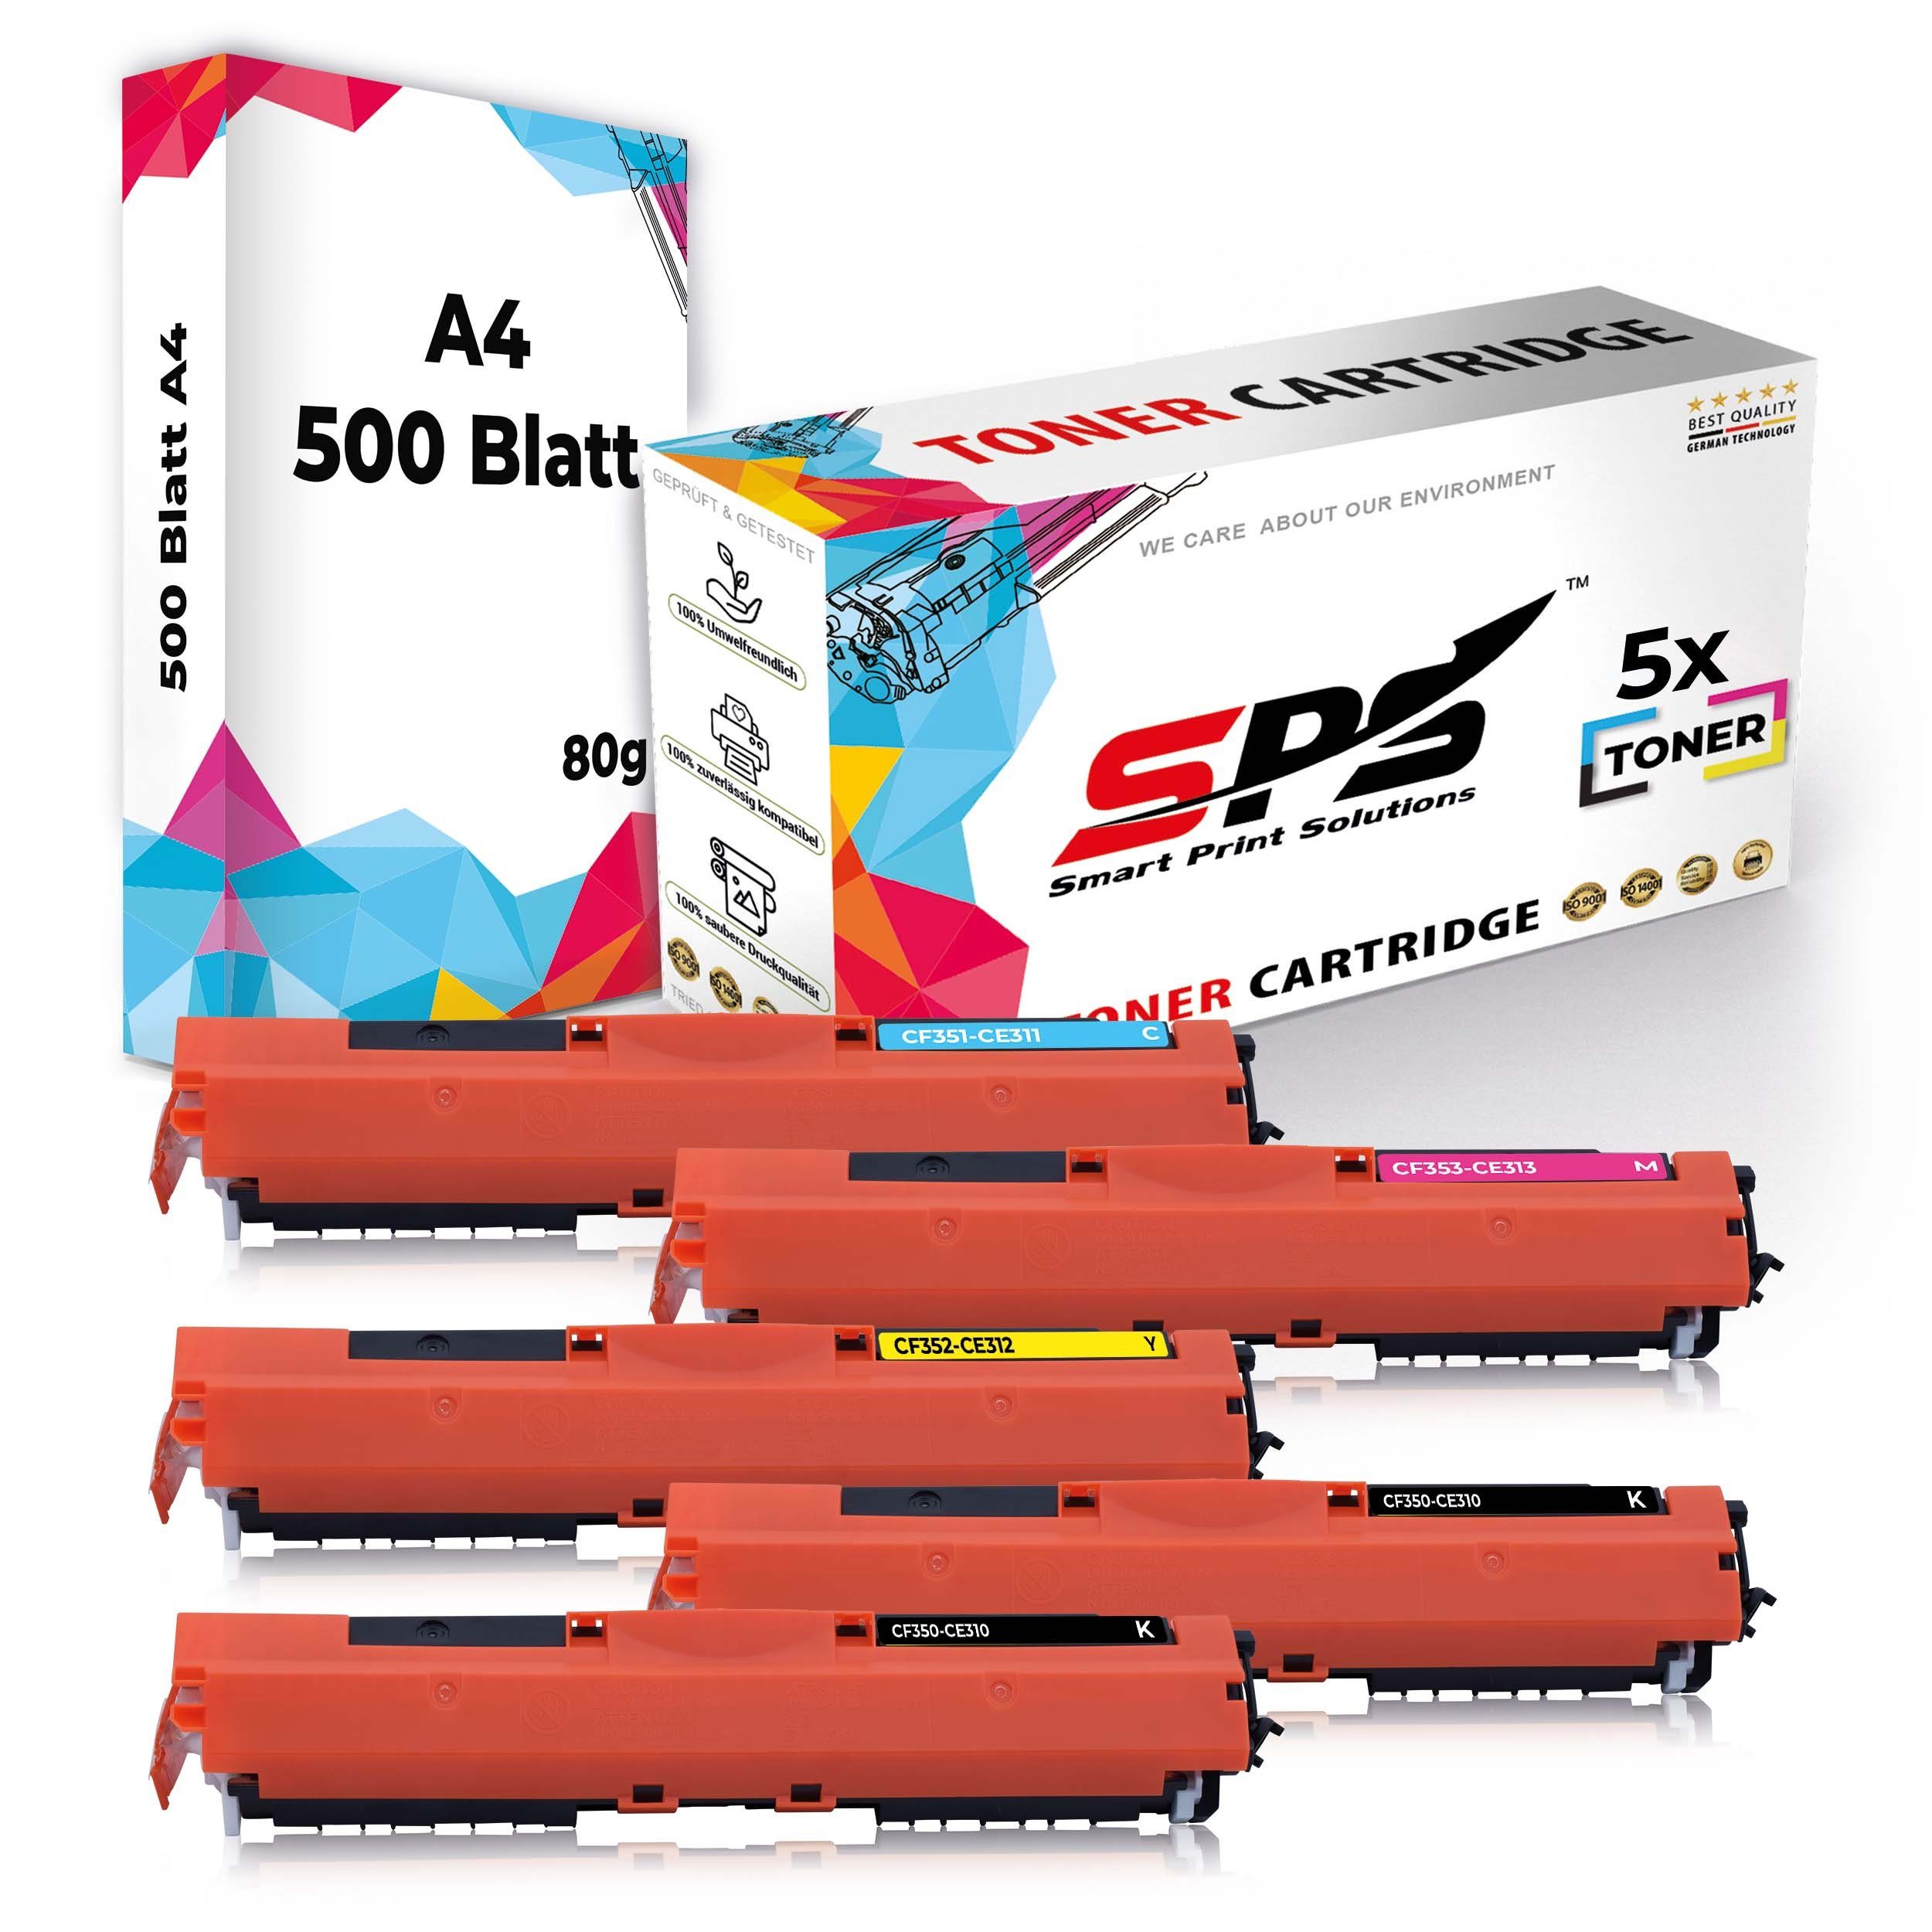 A4 5x Pack, (6er Druckerpapier A4 5x Kompatibel, Set Druckerpapier) + Tonerkartusche Multipack SPS Toner,1x